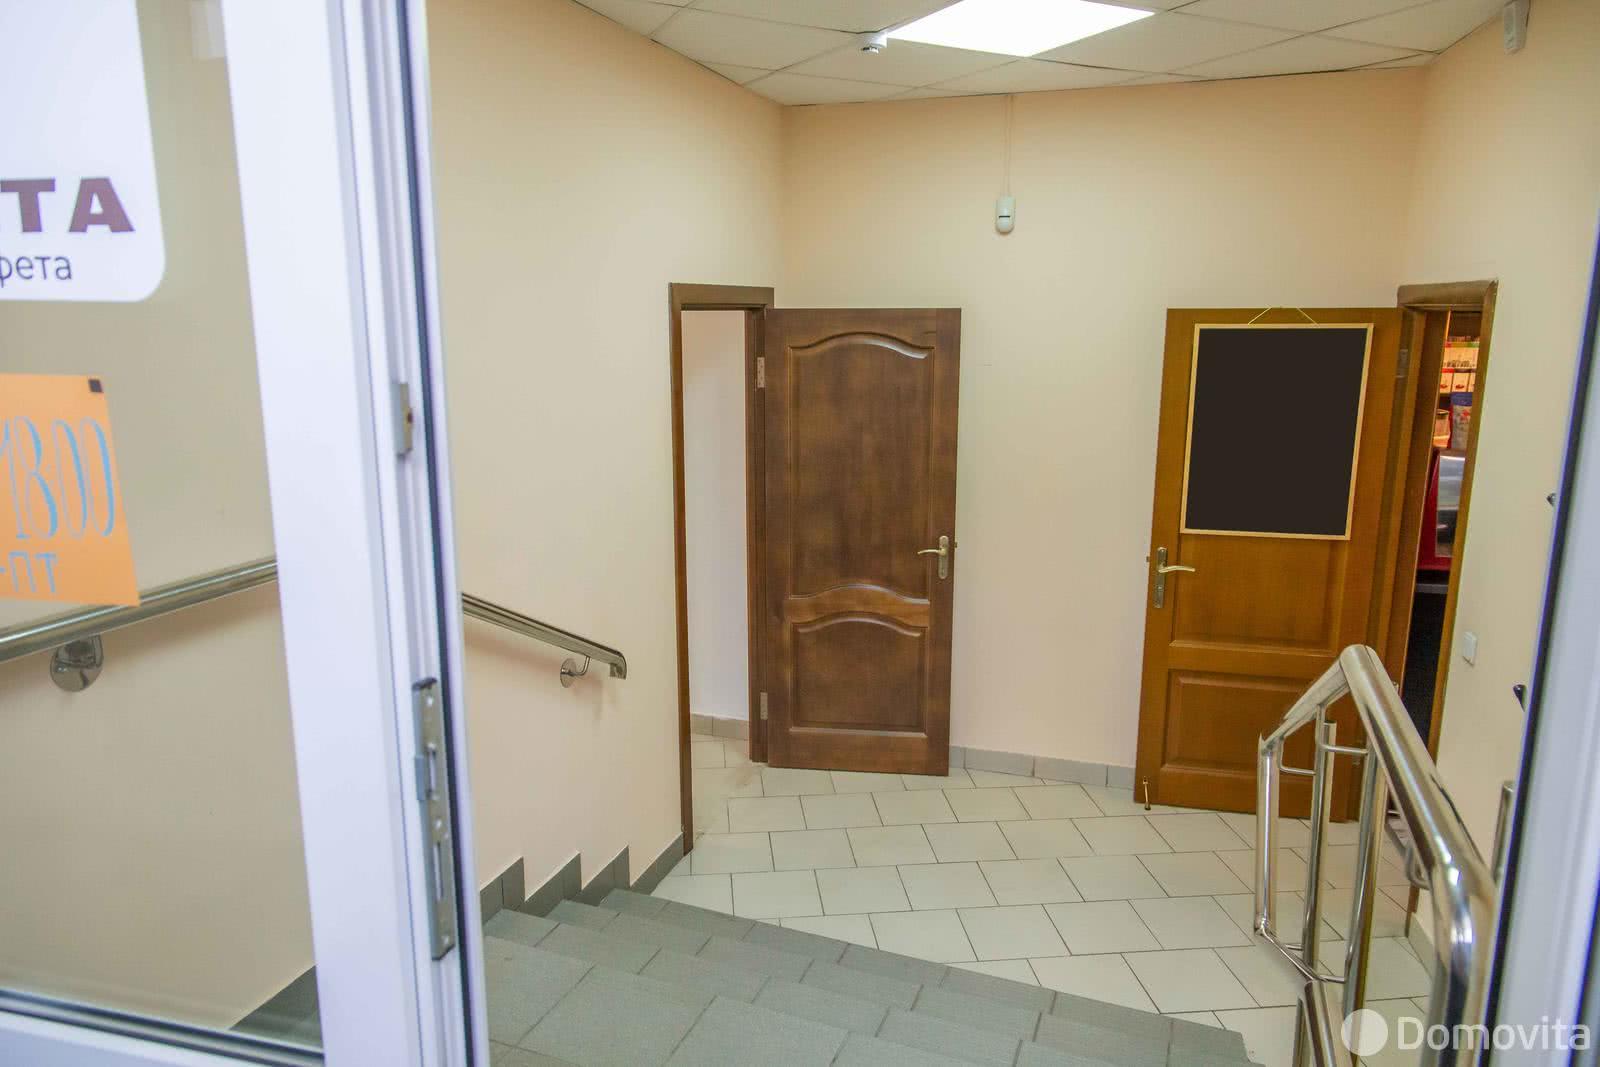 Снять офис на ул. Короля, д. 51 в Минске, 2800BYN, код 7075 - фото 5